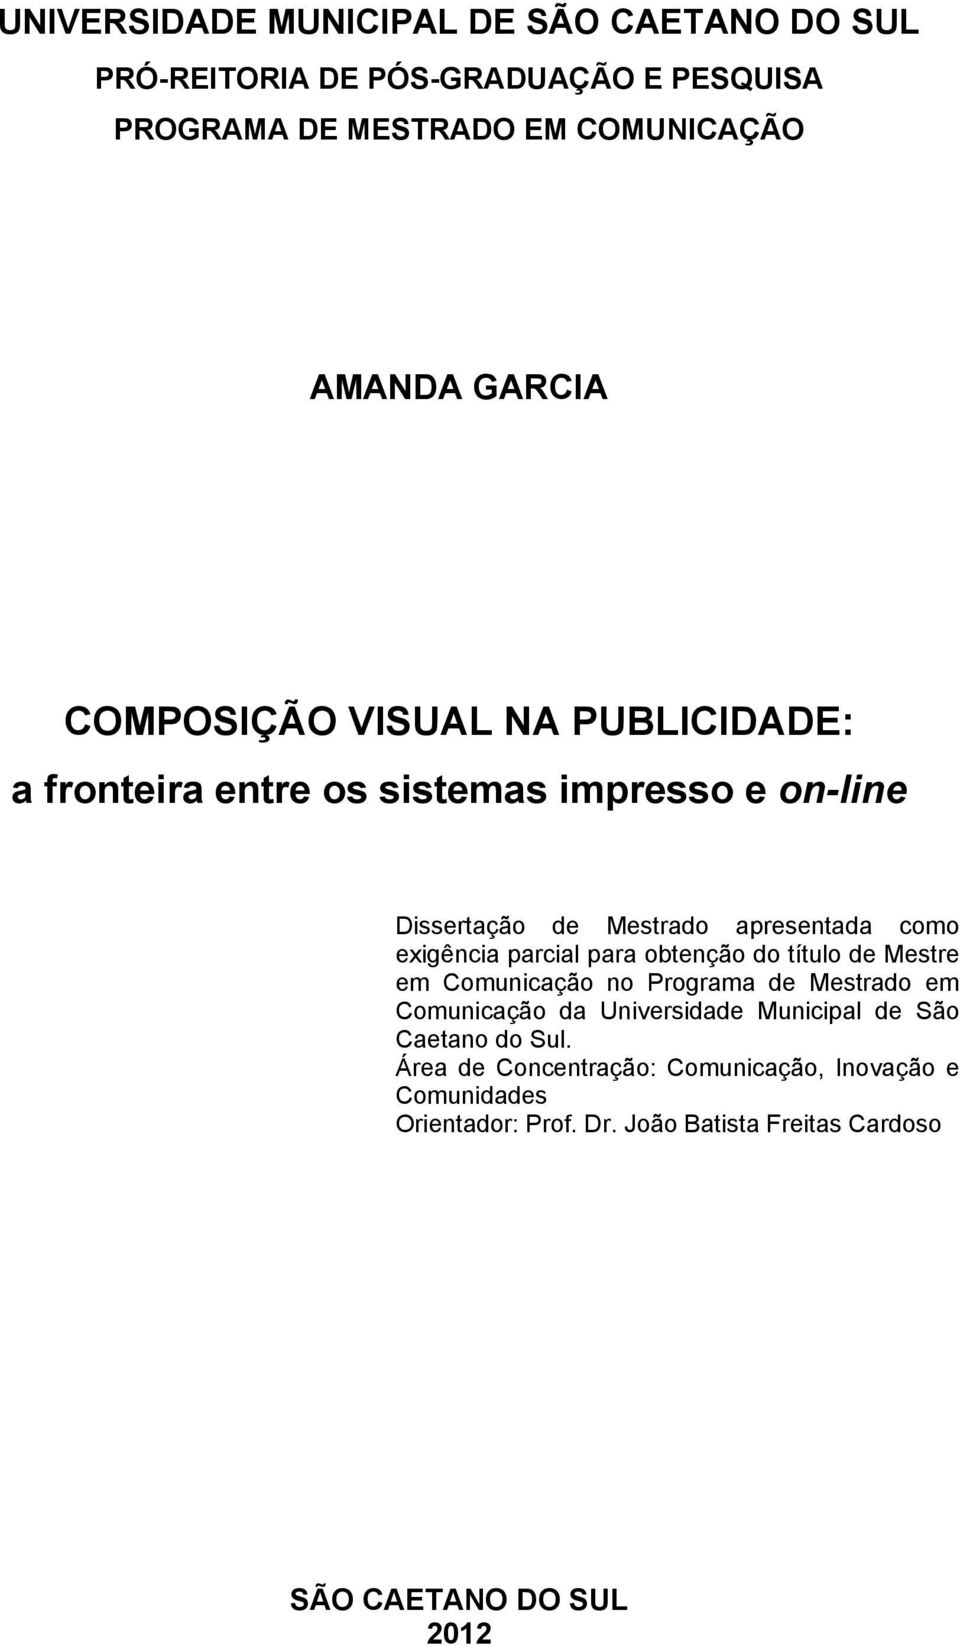 parcial para obtenção do título de Mestre em Comunicação no Programa de Mestrado em Comunicação da Universidade Municipal de São Caetano